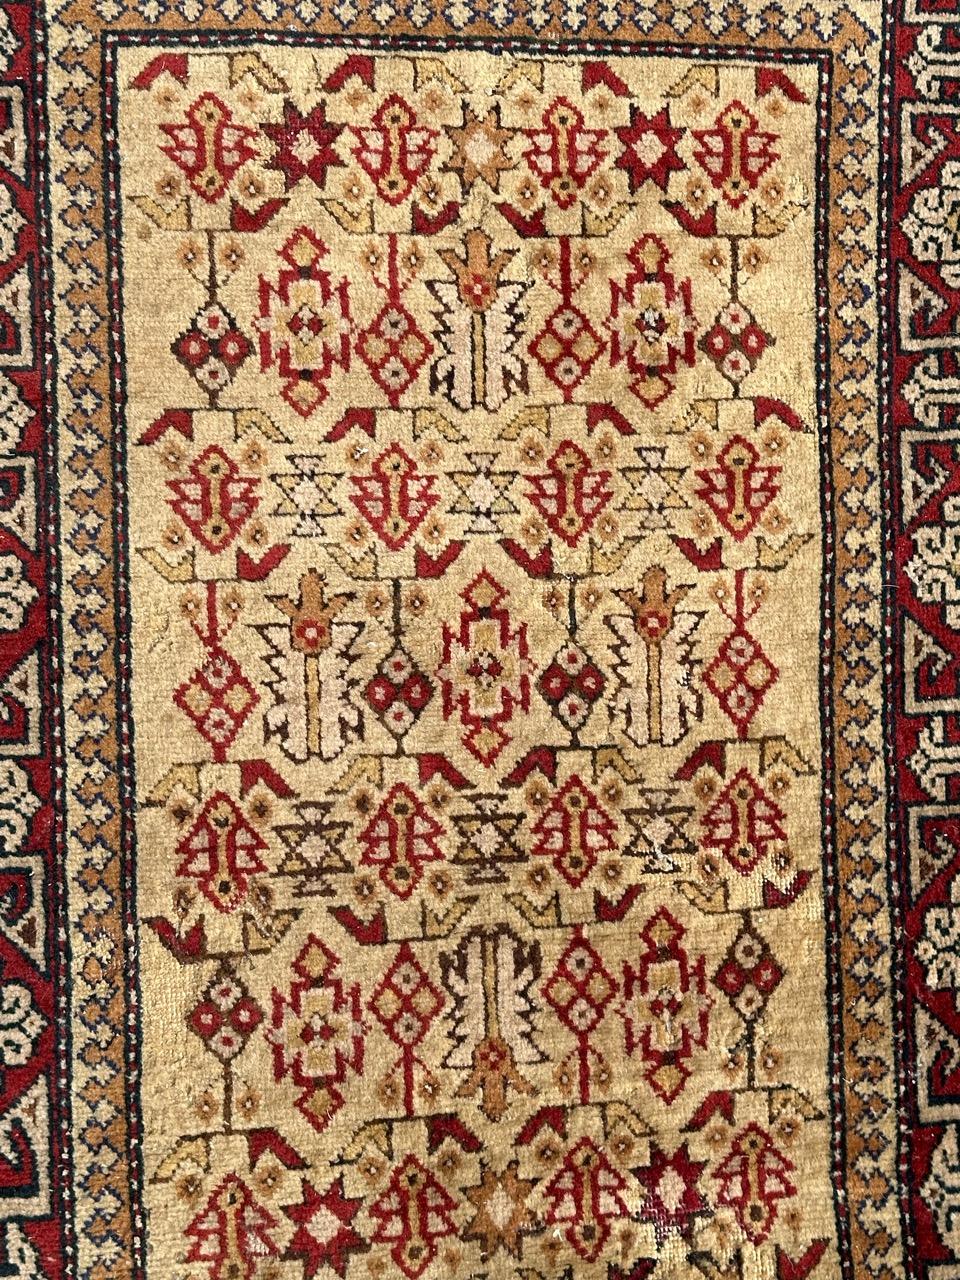 Schöner aserbaidschanischer Teppich aus der Mitte des Jahrhunderts mit schönem Design der kaukasischen Schirwan-Teppiche und schönen Farben, komplett handgeknüpft mit Wollsamt auf Baumwollbasis.

✨✨✨
